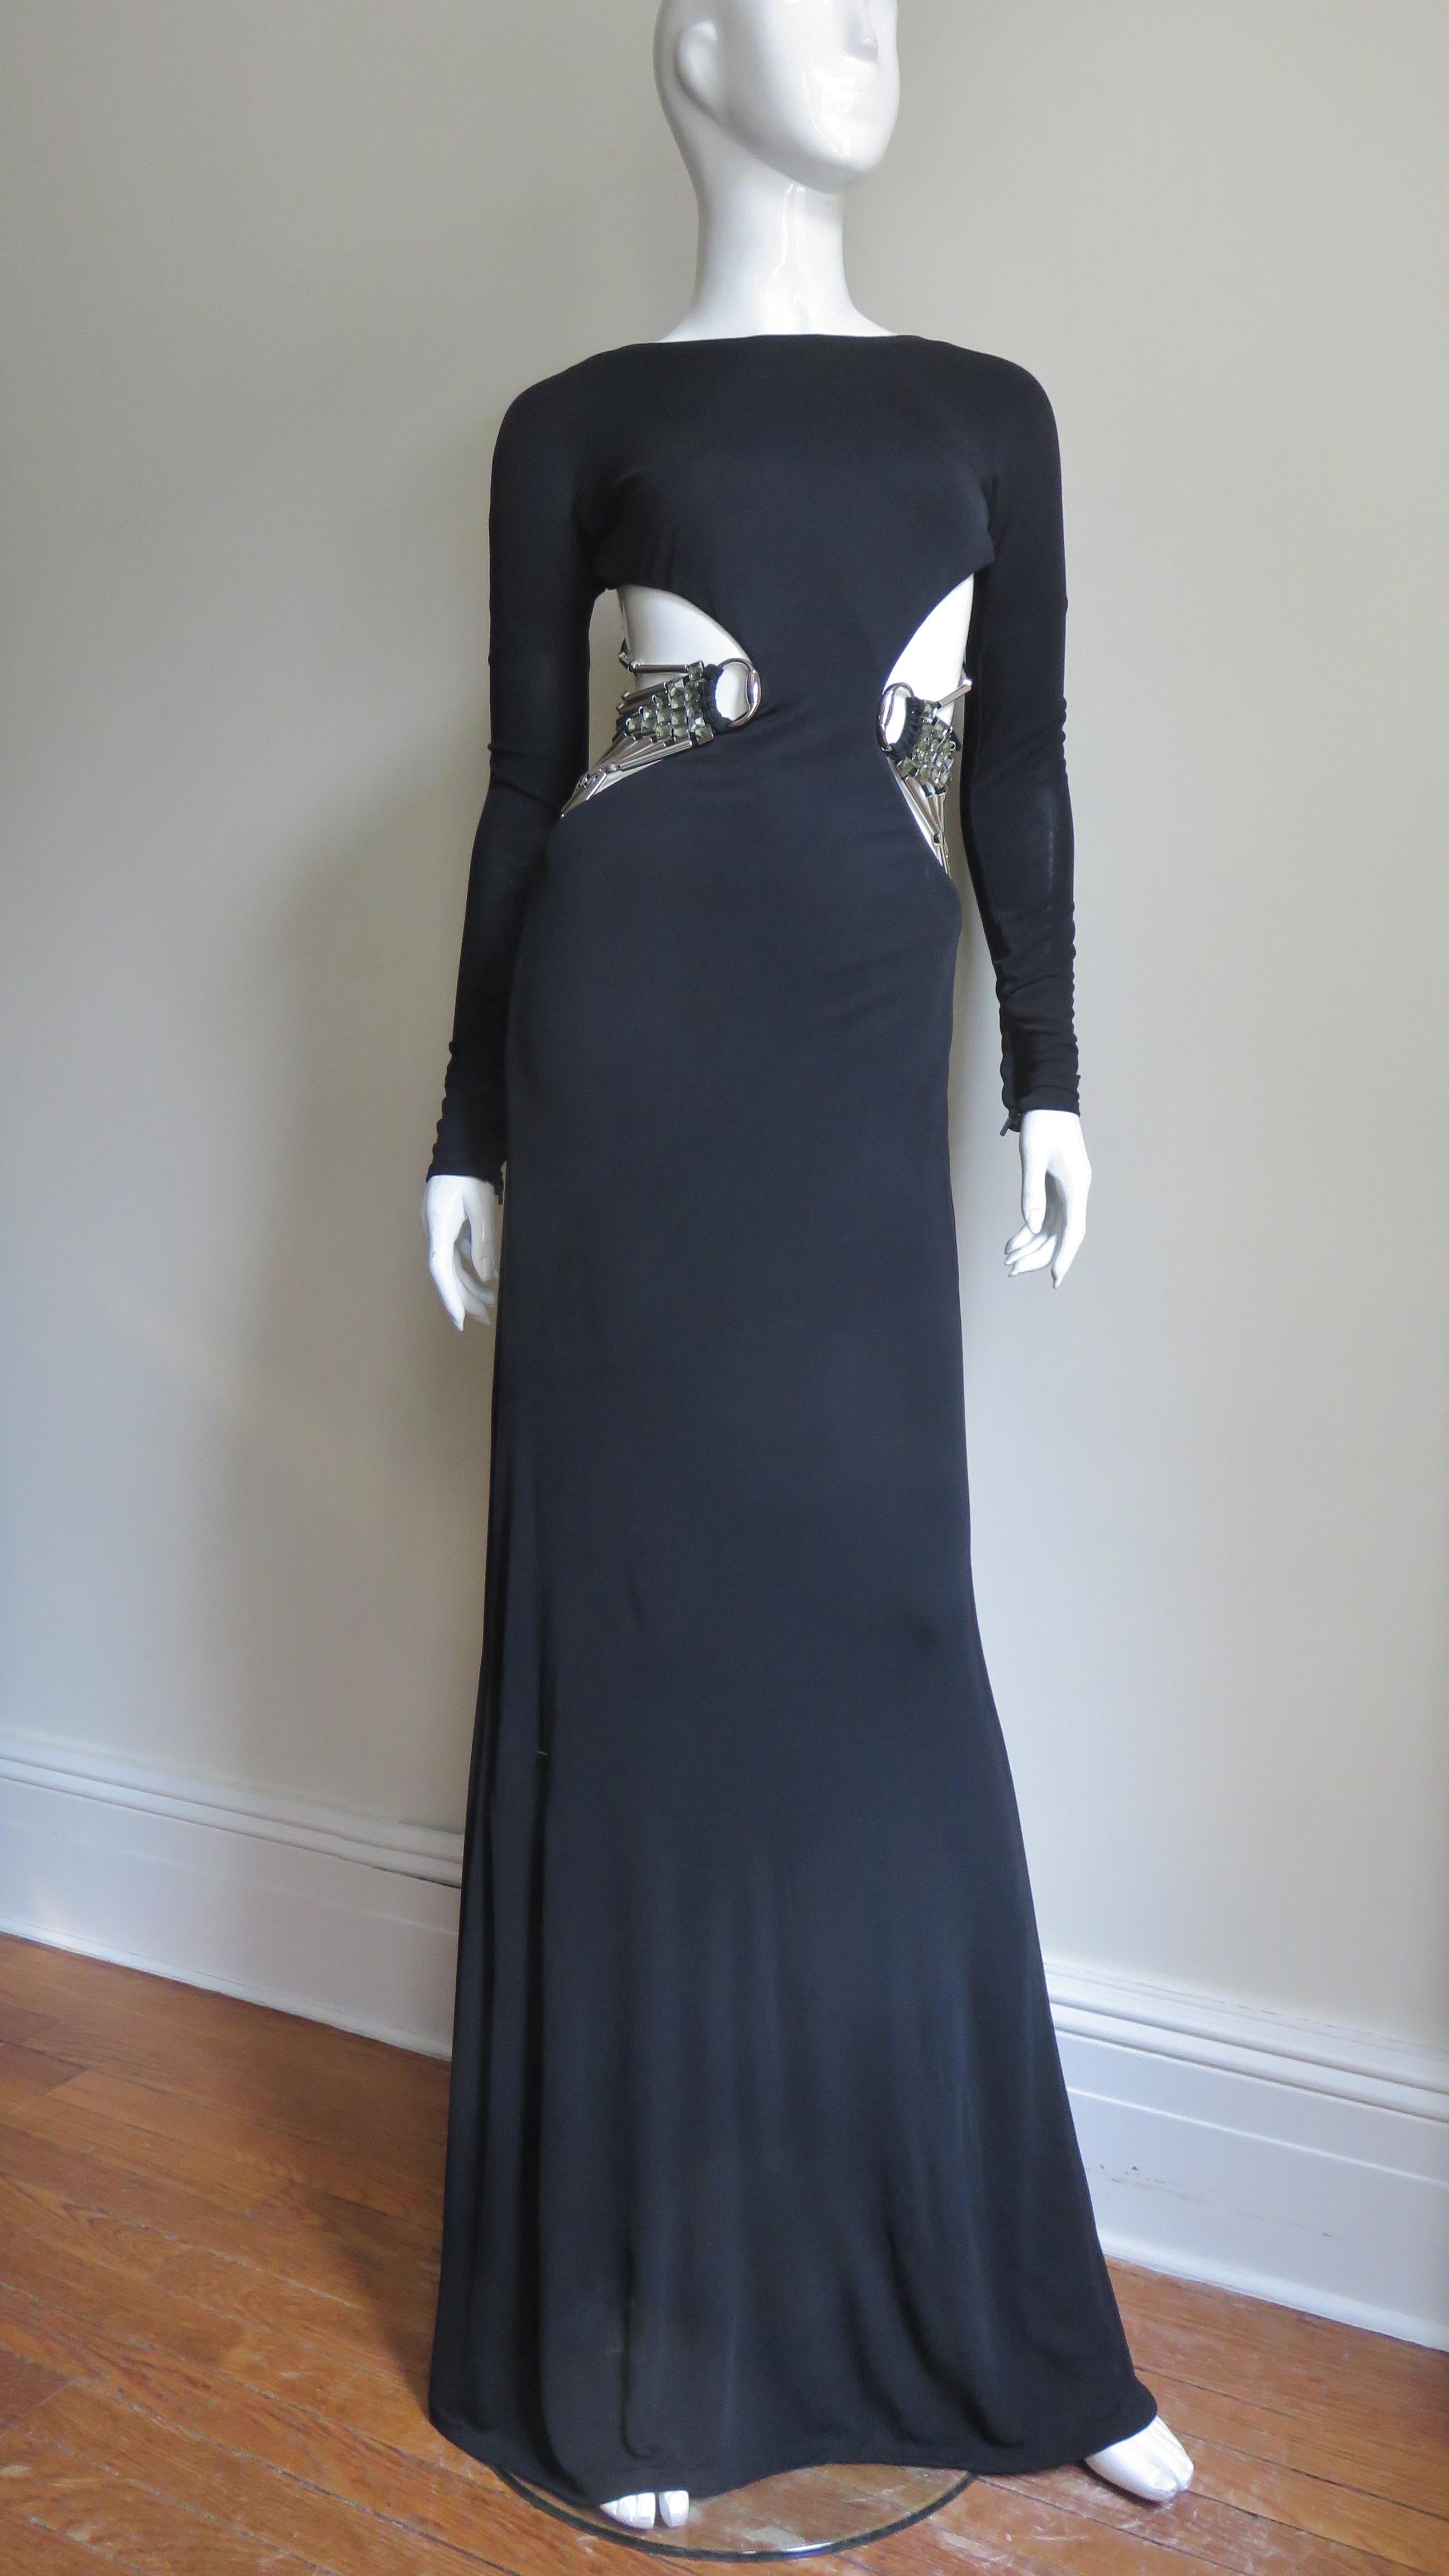 Ein wunderschönes schwarzes Seidenstrickkleid aus der S/S 2010 Kollektion von Gucci, das von Linda Evangelista auf dem Cover der Vogue getragen wurde.  Es ist tailliert geschnitten, hat lange Ärmel mit Reißverschluss an den Handgelenken und